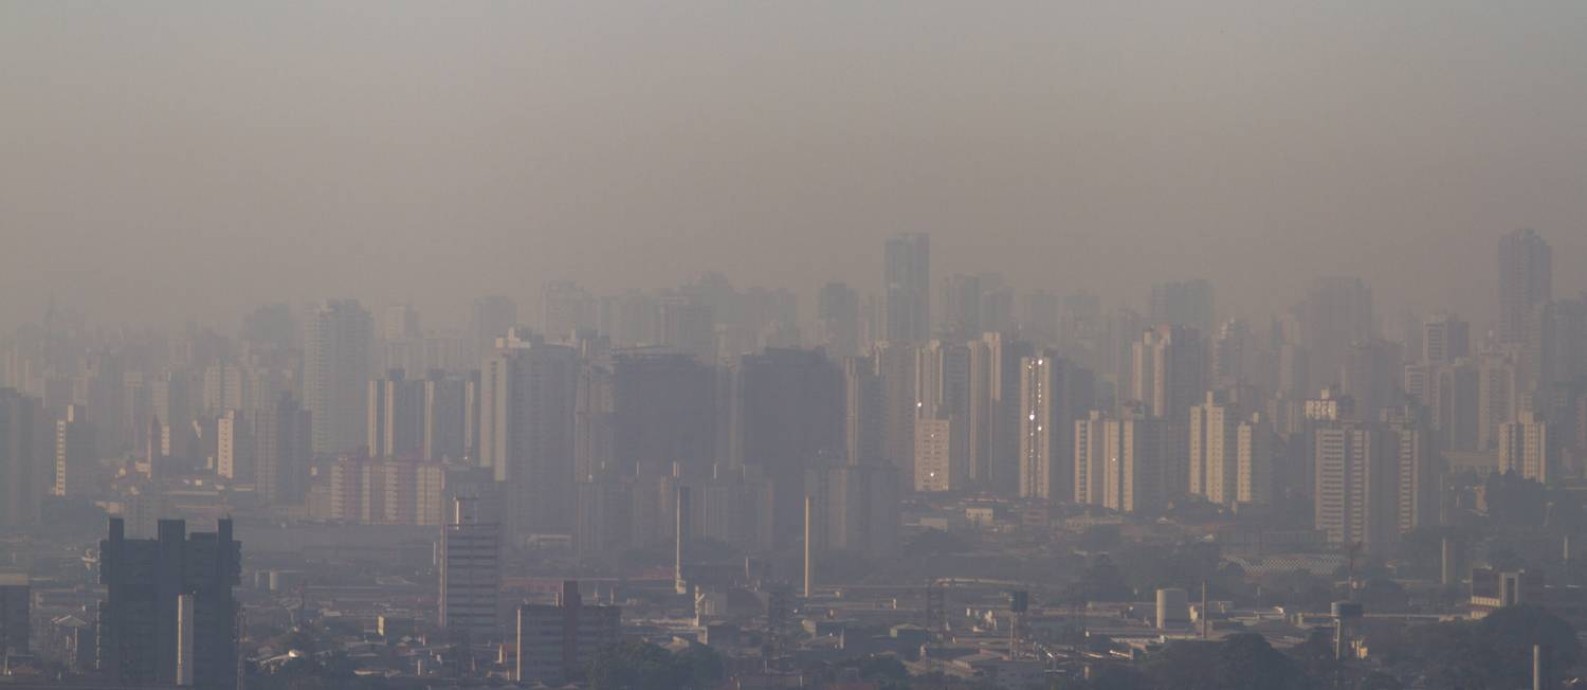 Vista do centro de São Paulo com nevoa de poluição Foto: Dario Oliveira / Folhapress